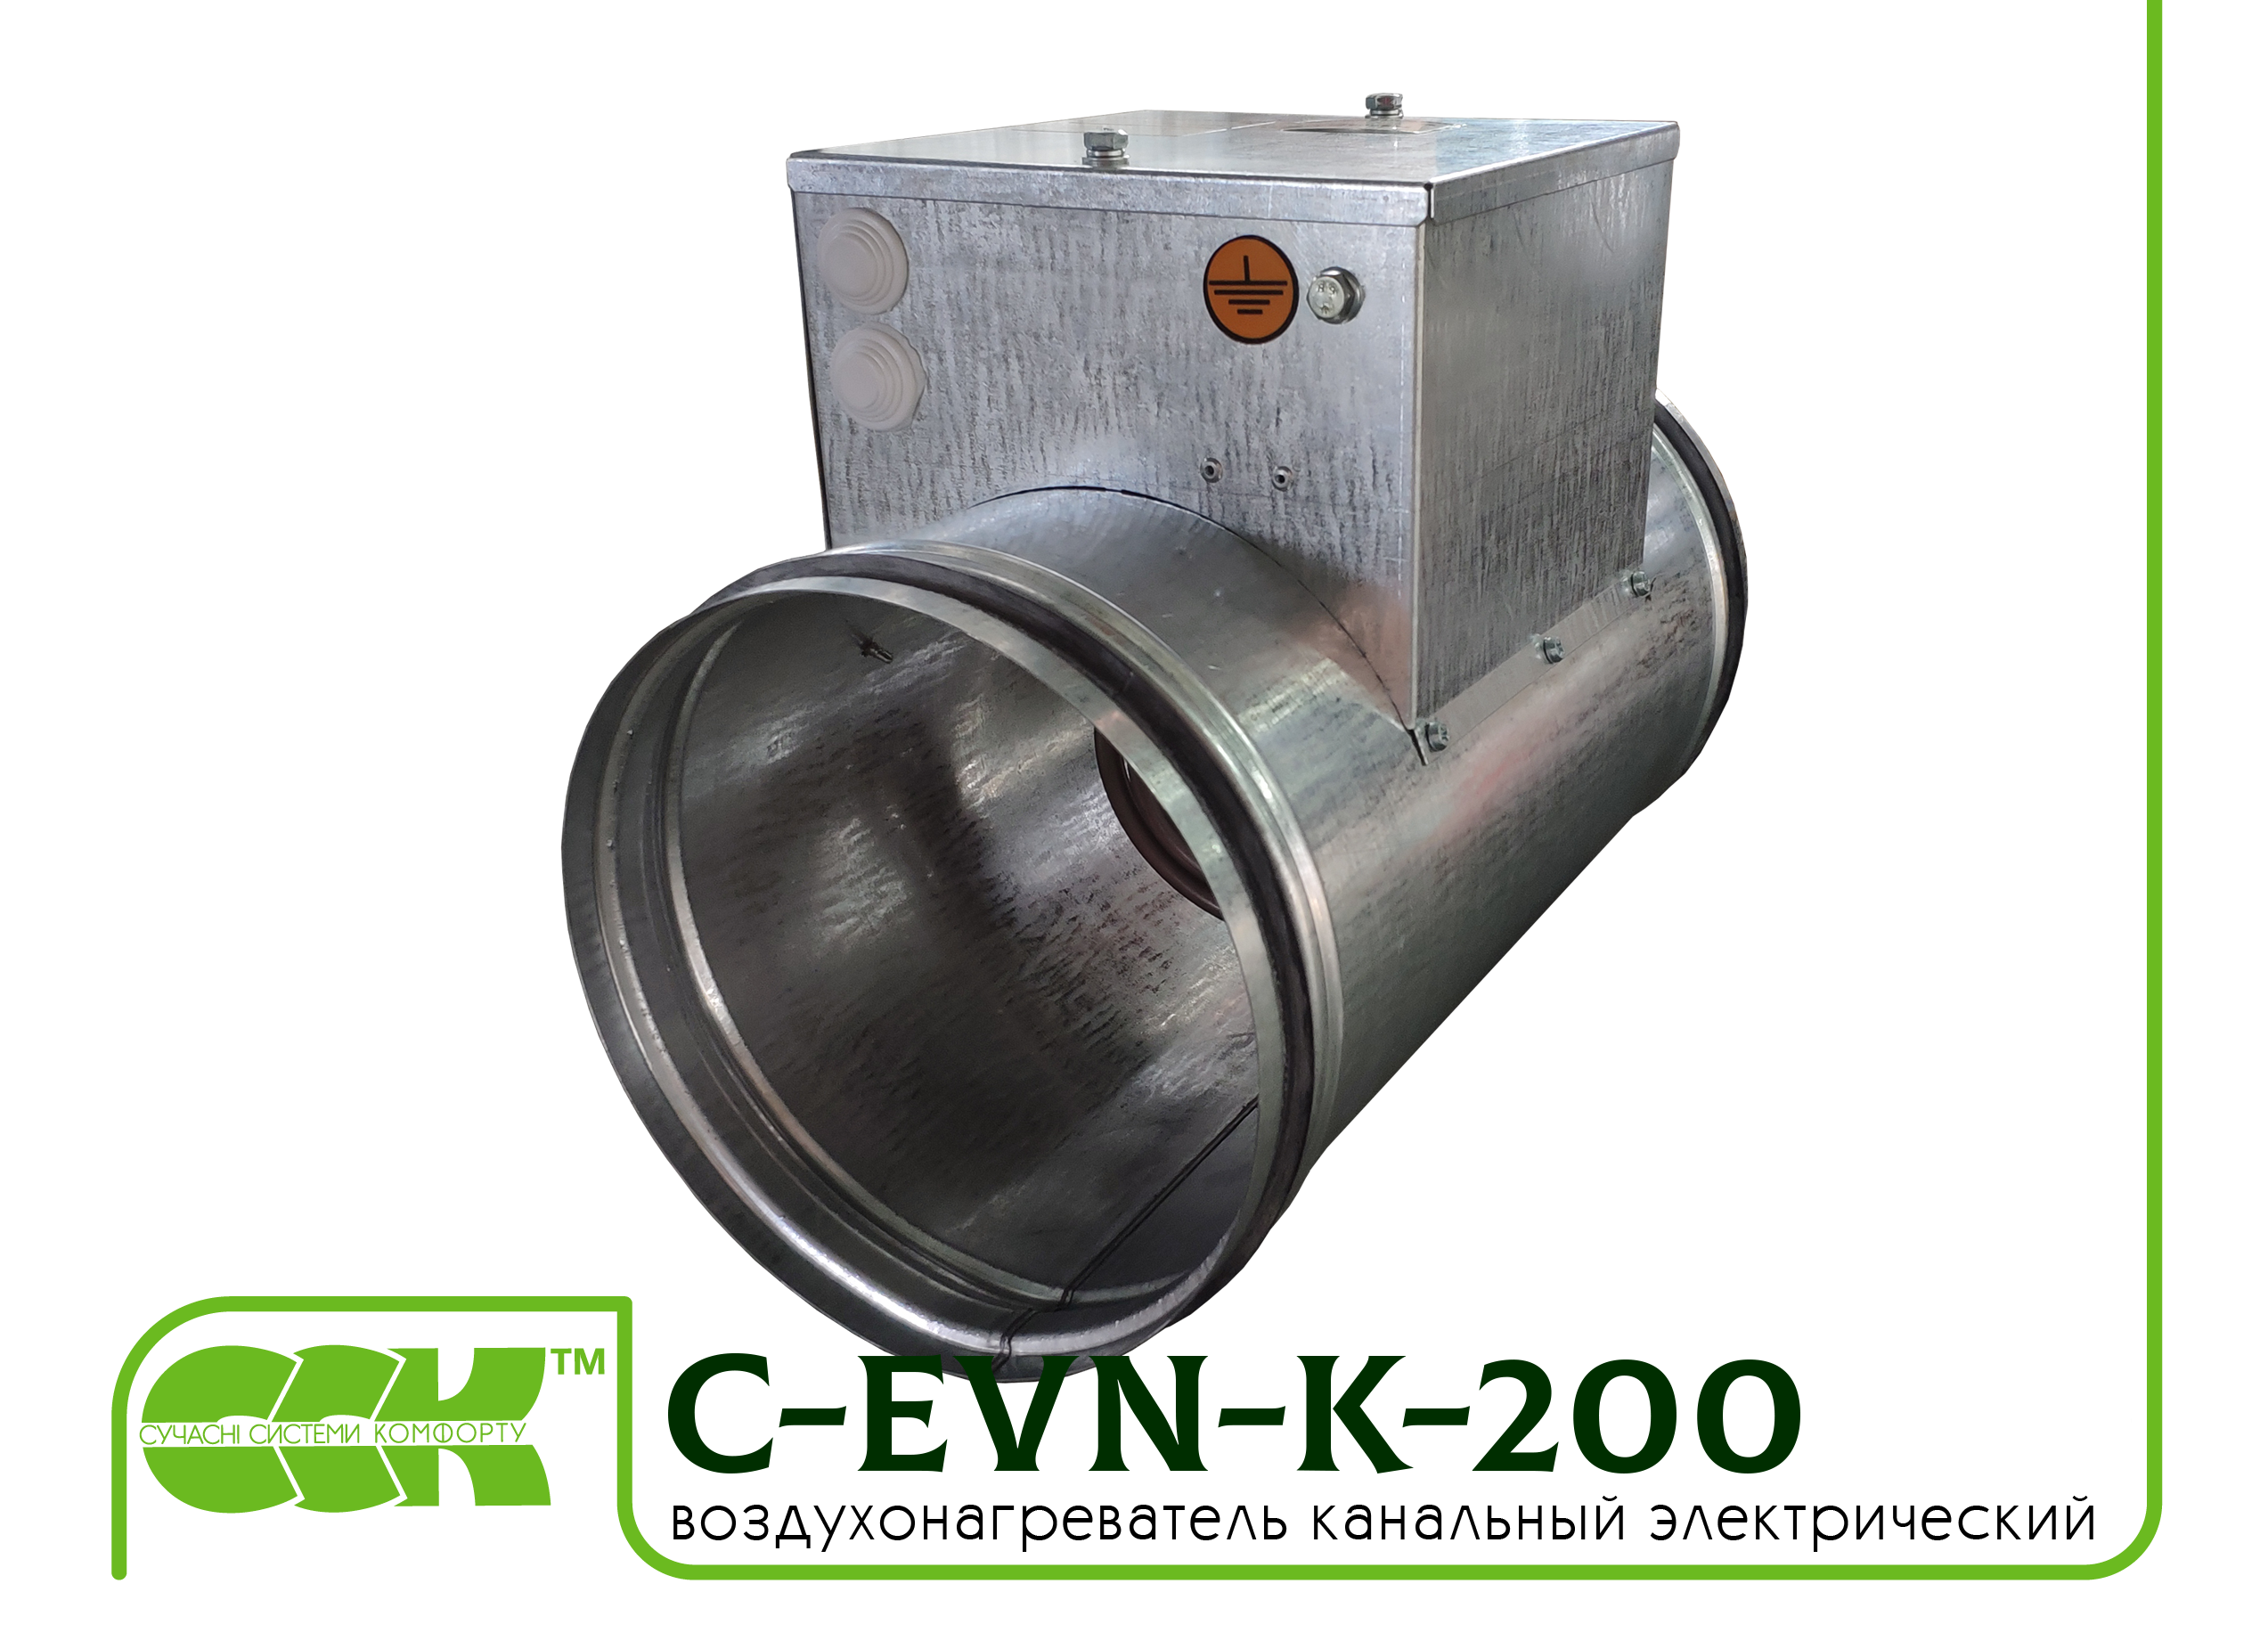 Воздухонагреватель электрический для круглых каналов C-EVN-K-200-3,0